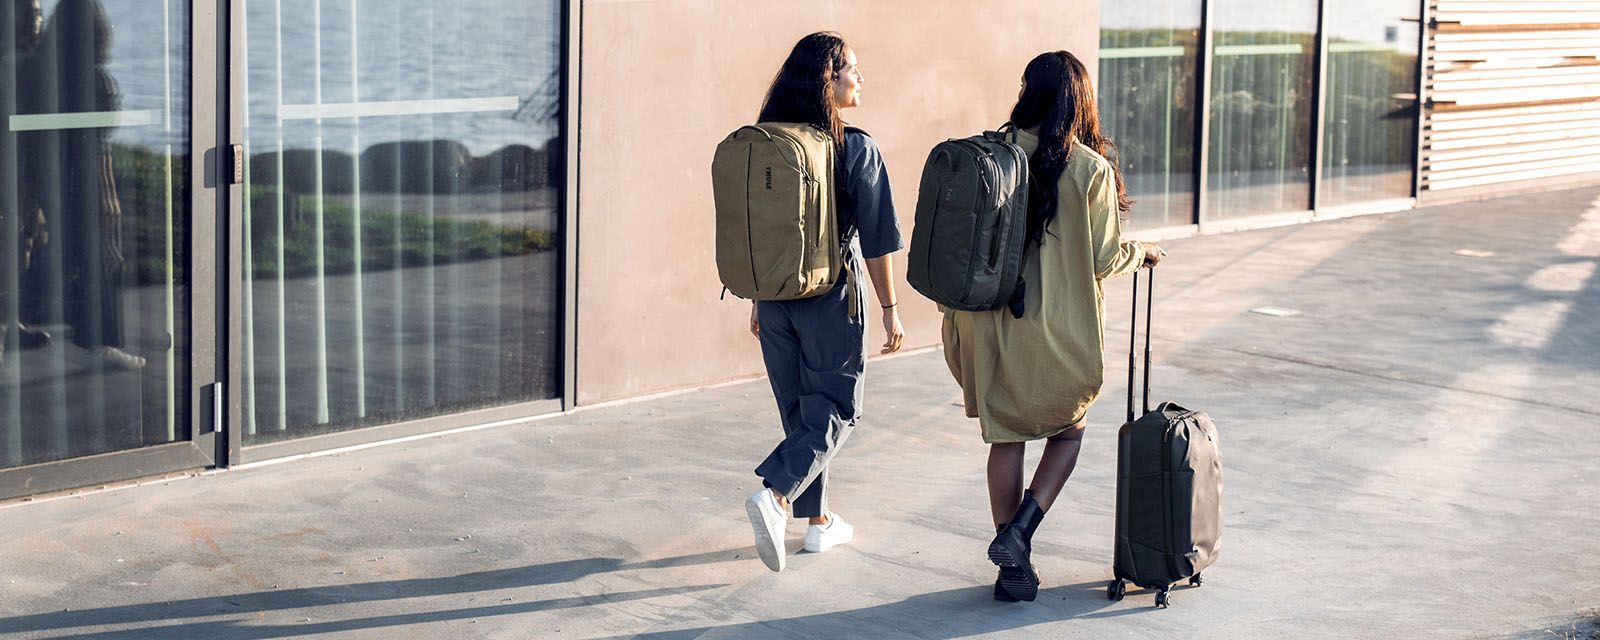 Słoneczny dzień. Dwie kobiety z plecakami Thule Aion i walizką na bagaż podręczny idą chodnikiem.